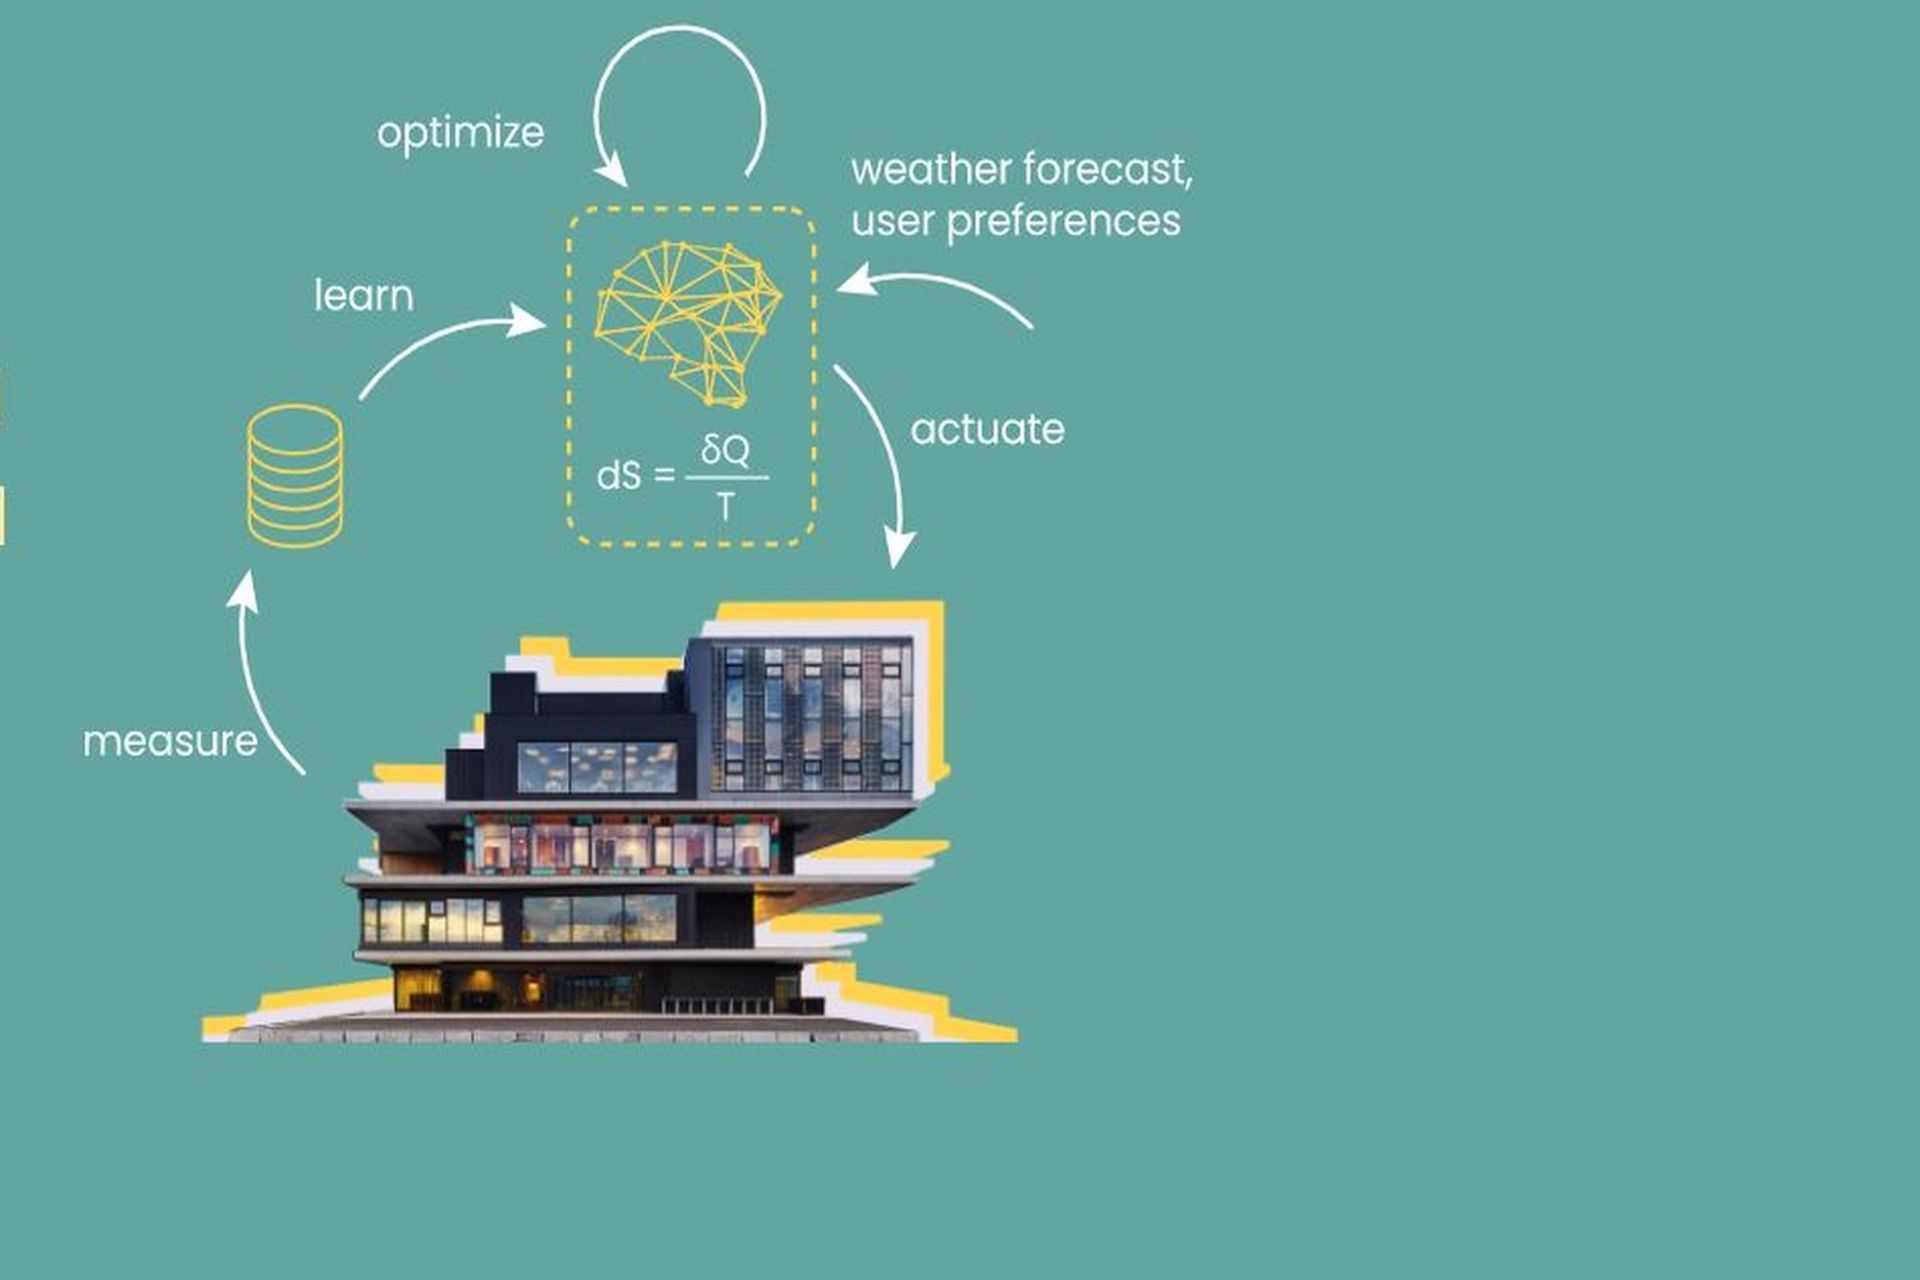 L'algoritmo di autoapprendimento per il riscaldamento-raffreddamento dell'edificio NEST (Next Evolution in Sustainable Building Technologies) a Dübendorf